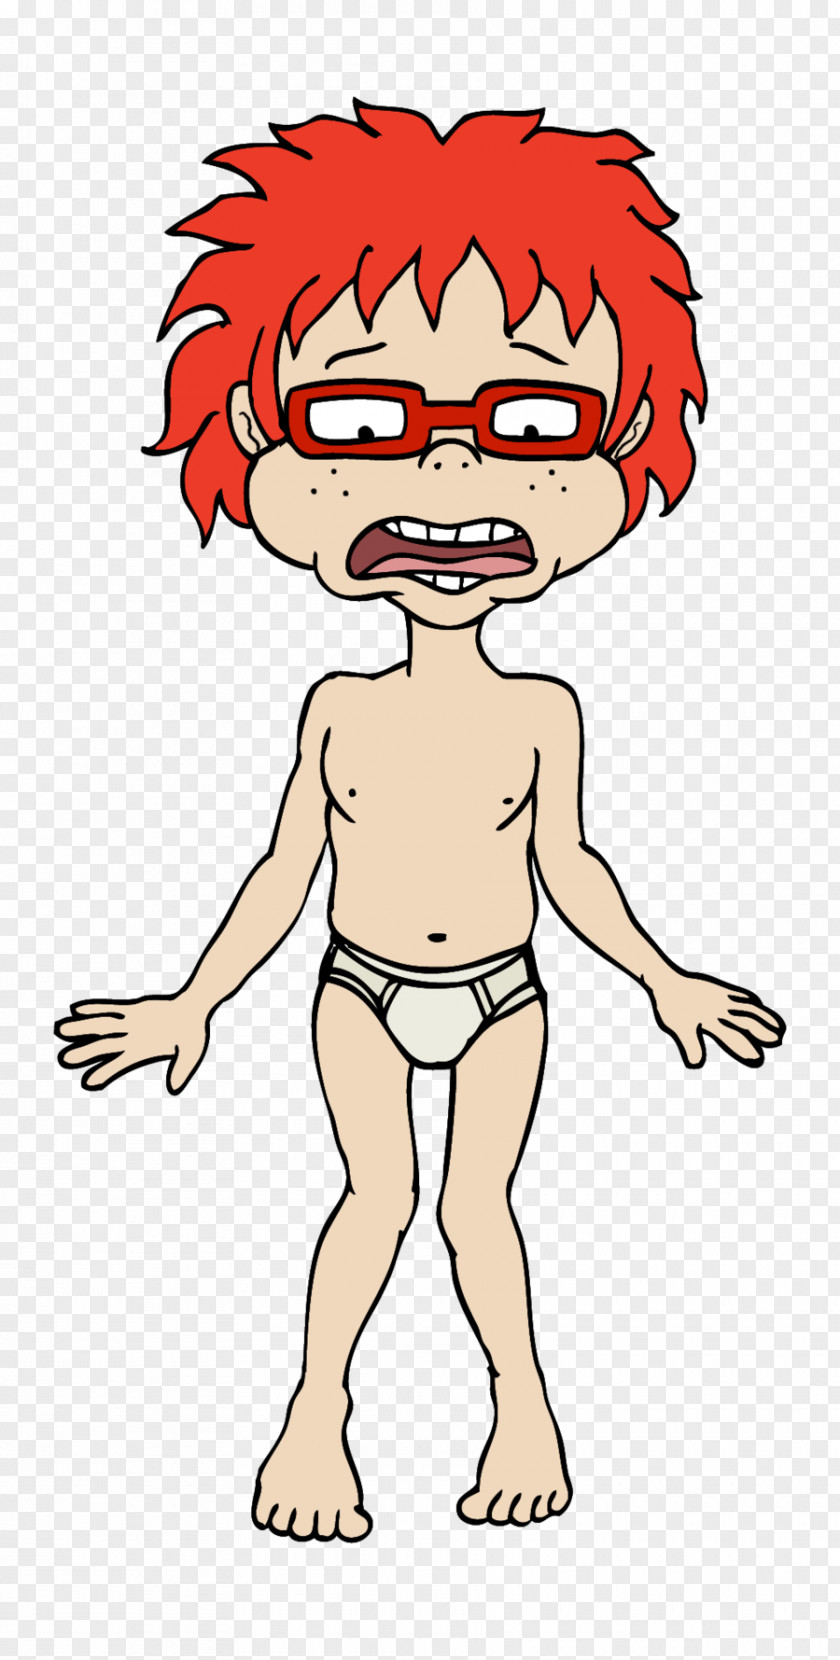 Chuckie Finster Cartoon Clip Art PNG